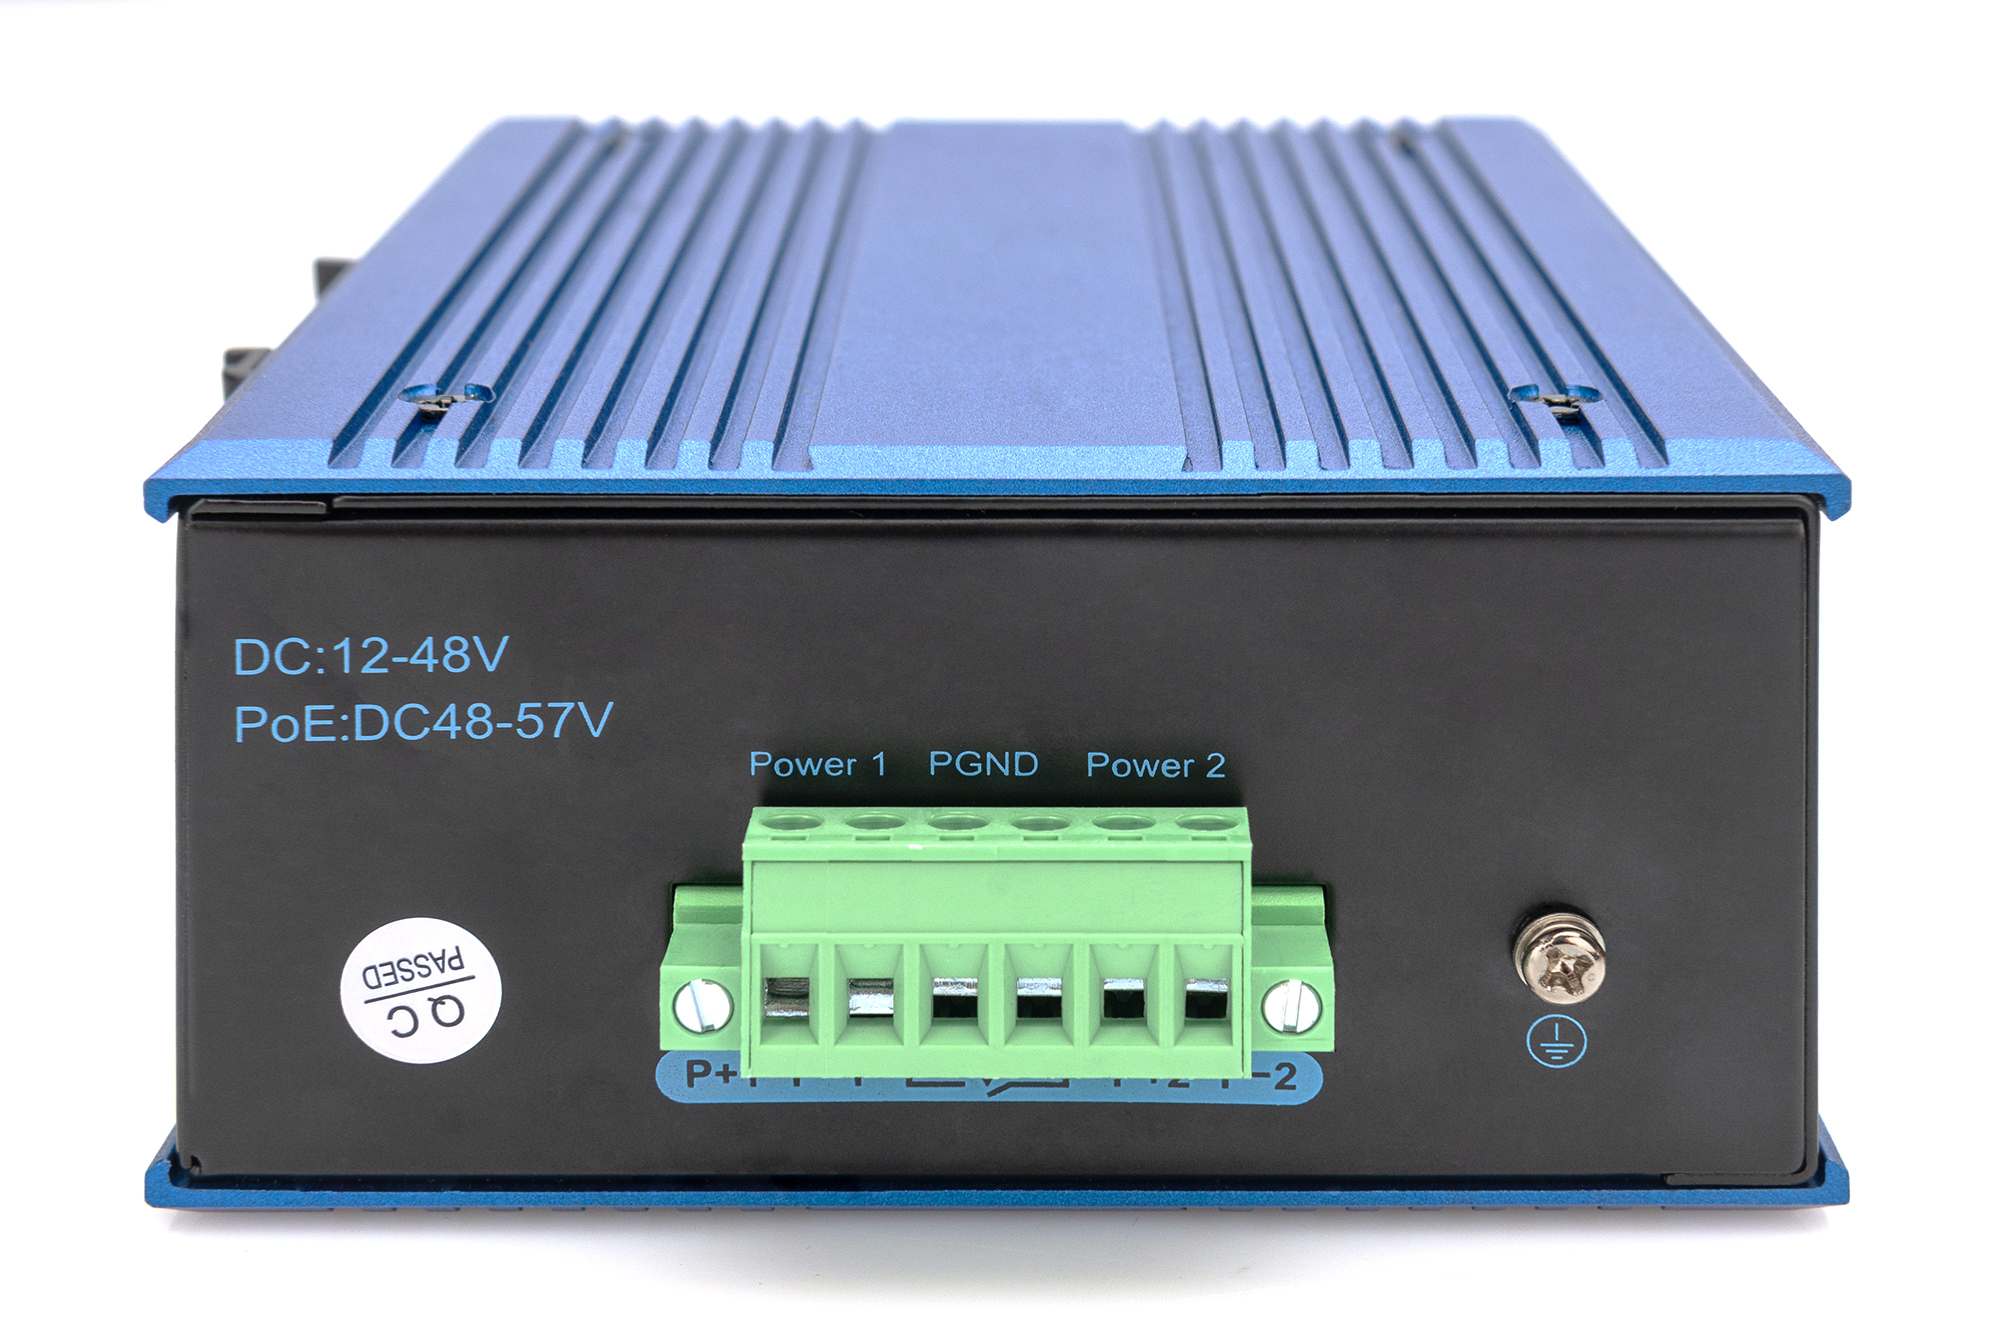 DIGITUS 8 Port Gigabit Ethernet Netzwerk Switch, Industrial, Unmanaged, 1 SFP Uplink